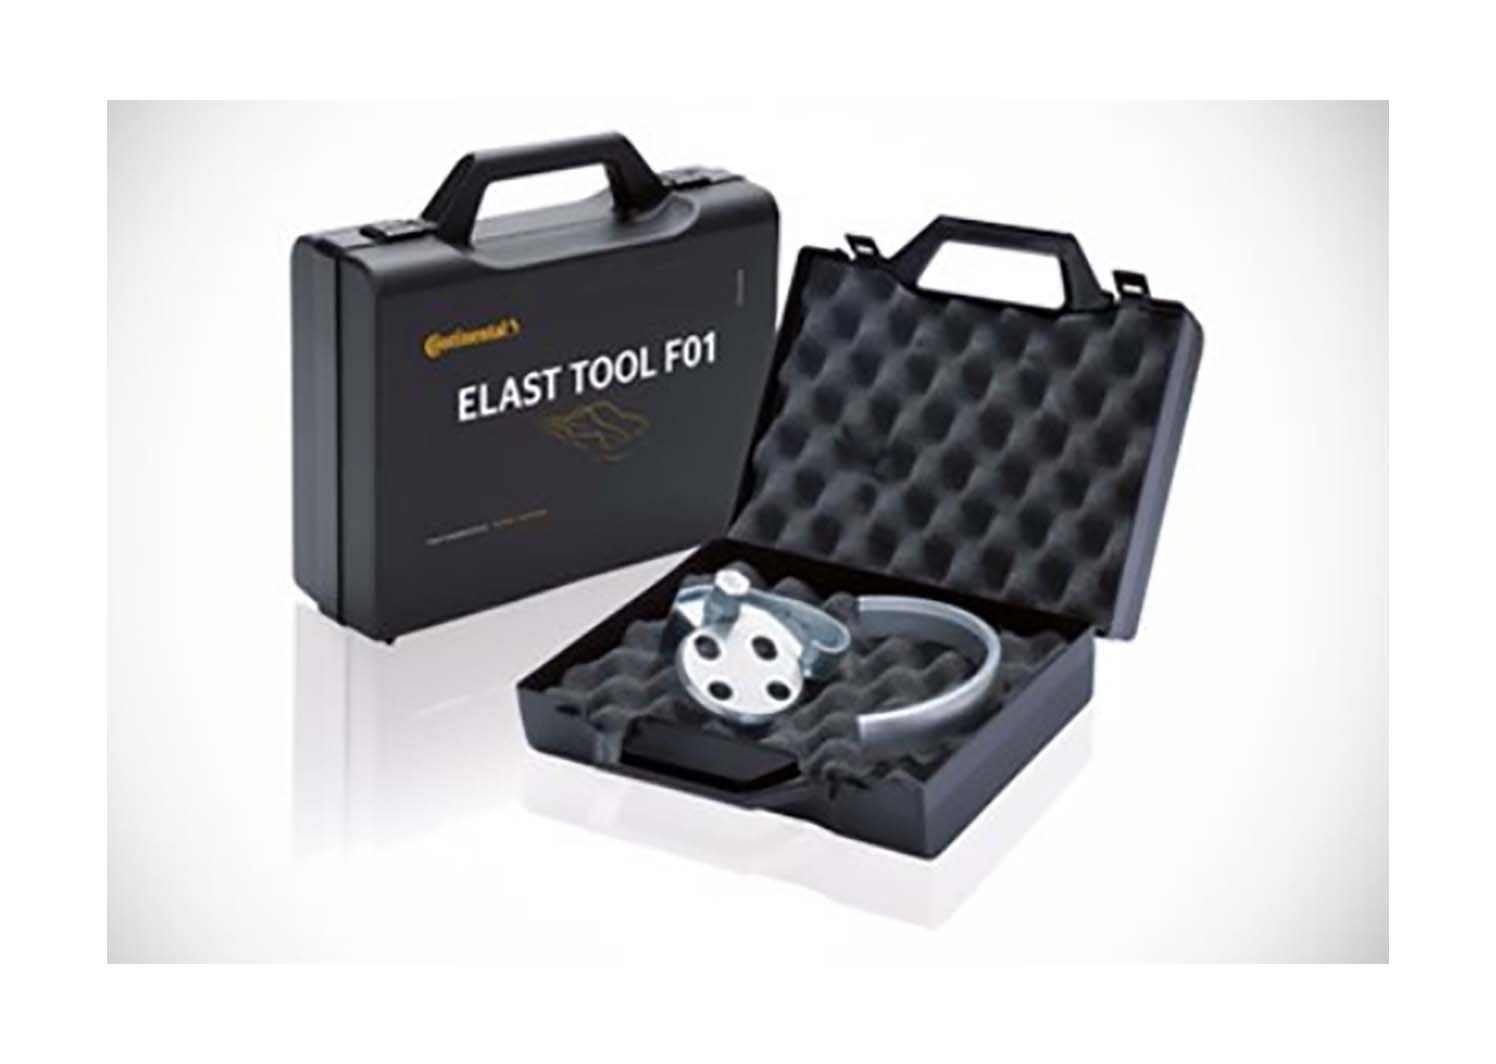 F tools. Приспособление для установки ремней Elast. Uni Tool Elast. Continental CTAM CT коробка упаковка внешний вид. Elast Tool f01 купить.